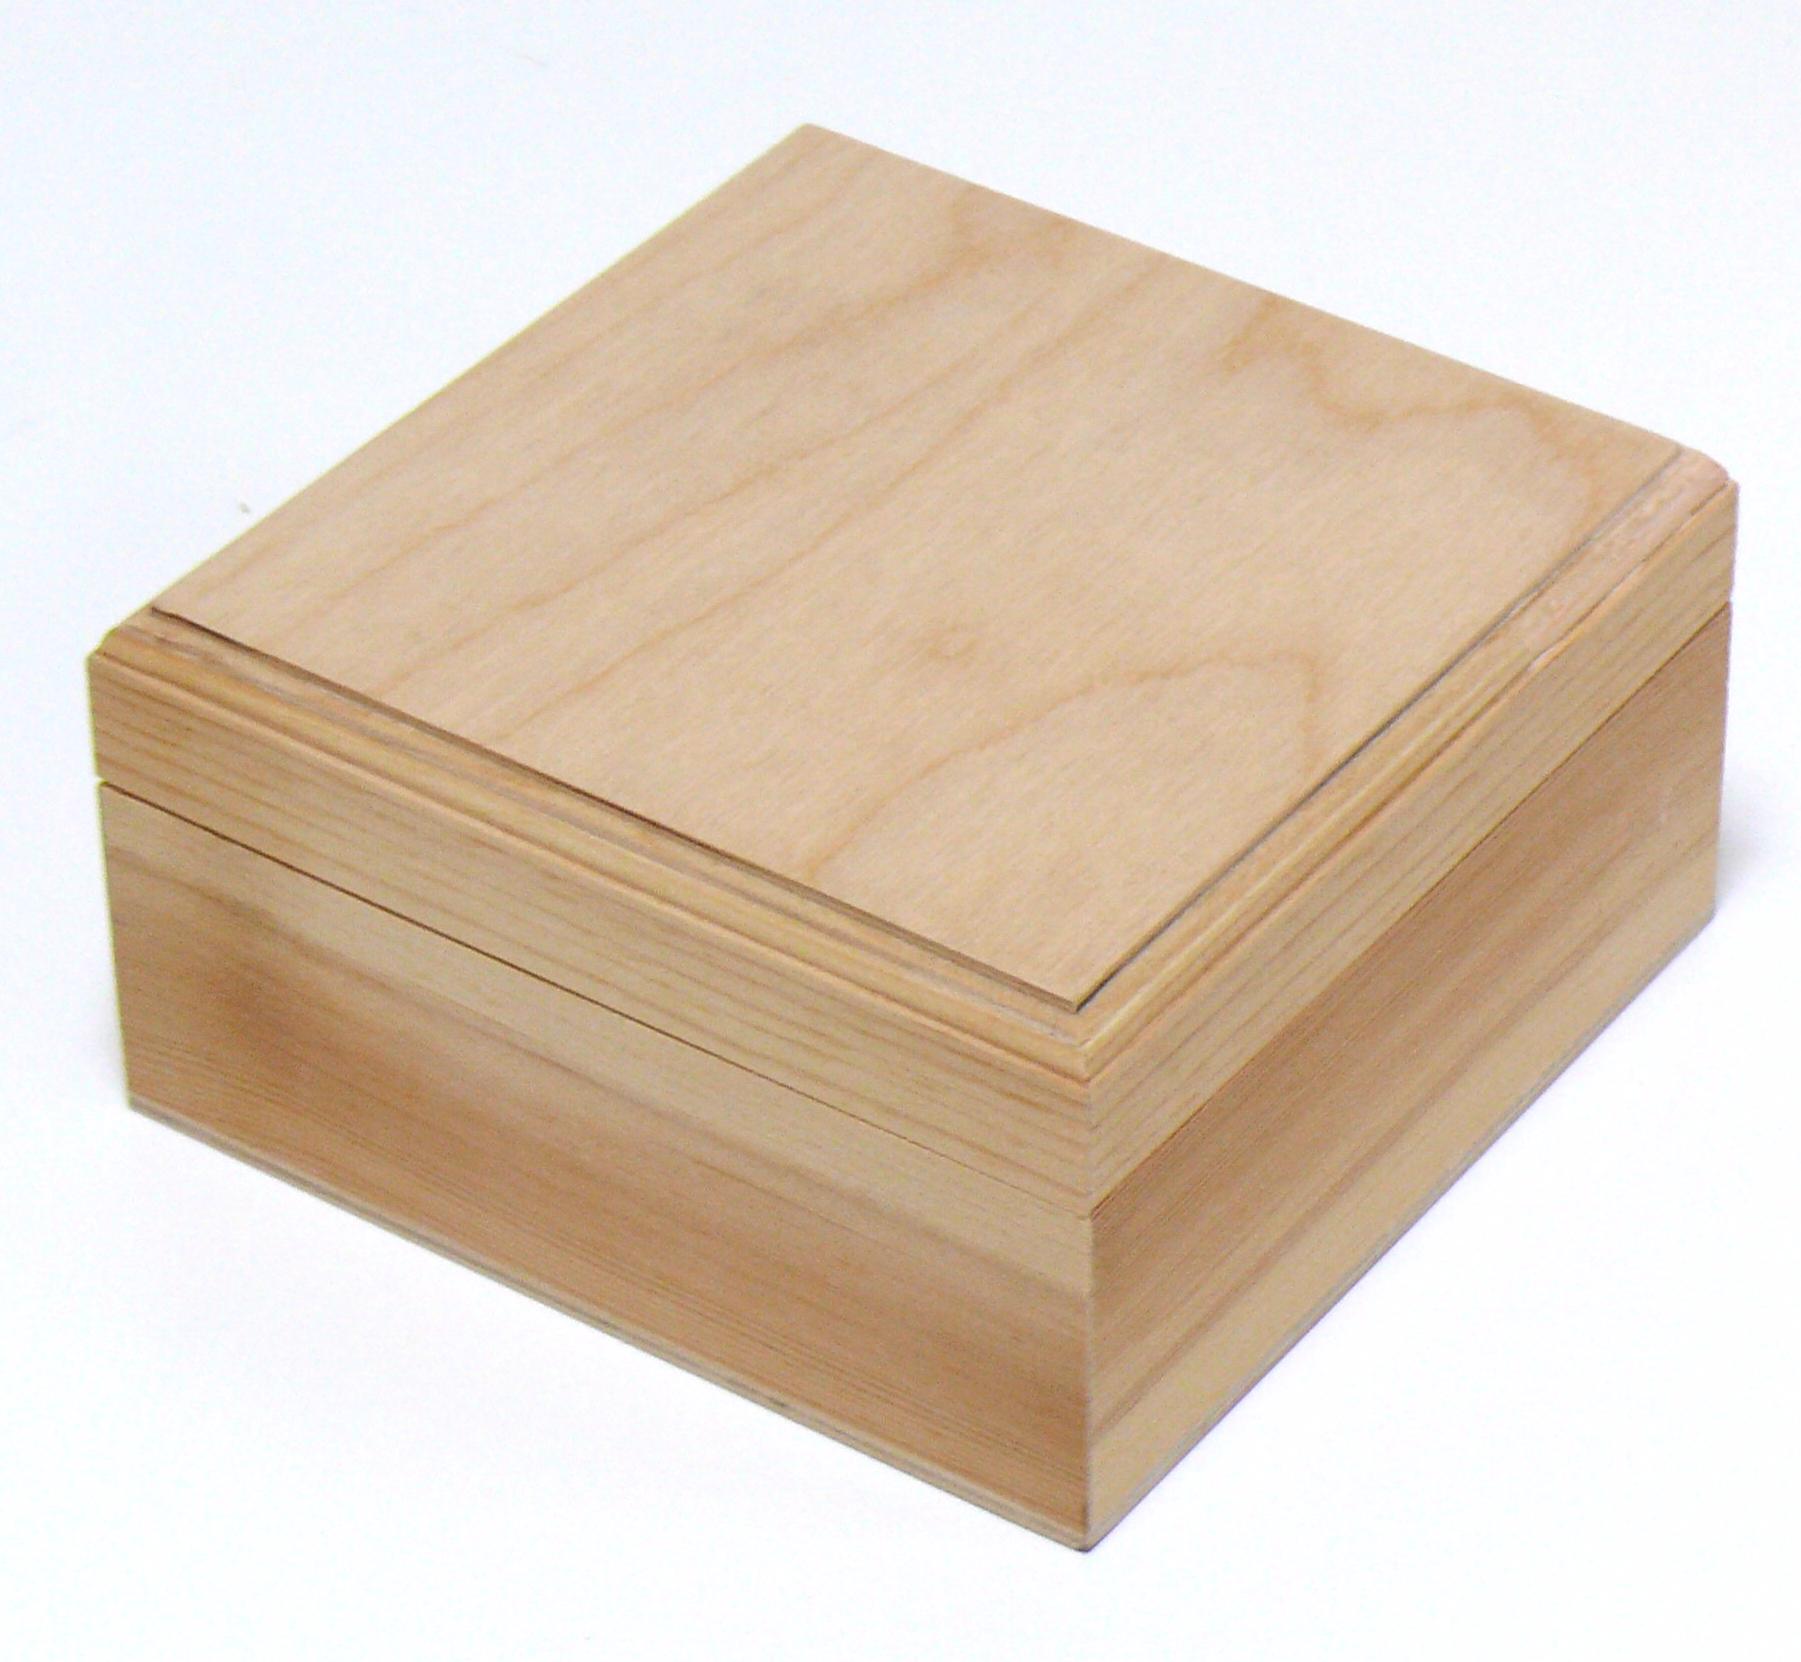 Поделки из дерева для продажи - бизнес на деревянных изделиях своими руками